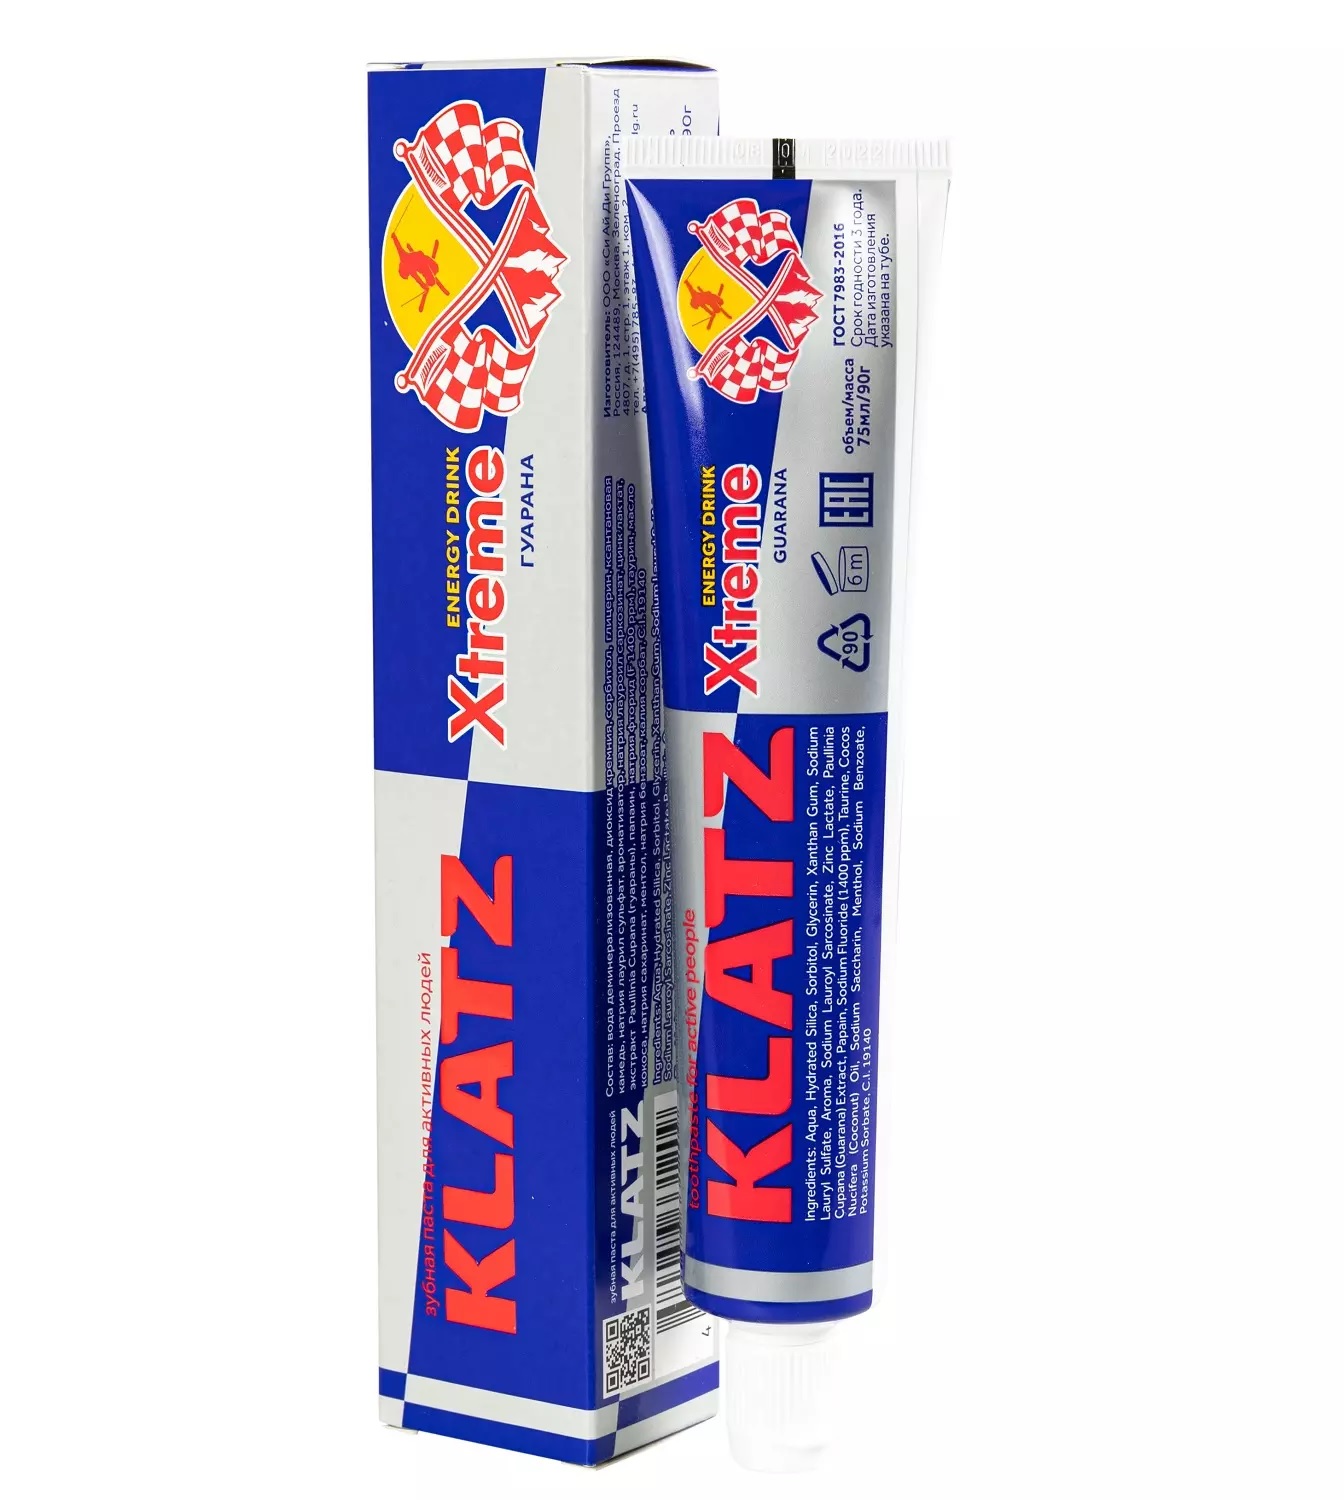 Паста зубная Klatz X-treme Energy Drink для активных людей, гуарана, 75 мл klatz зубная паста для активных людей женьшень 75 мл